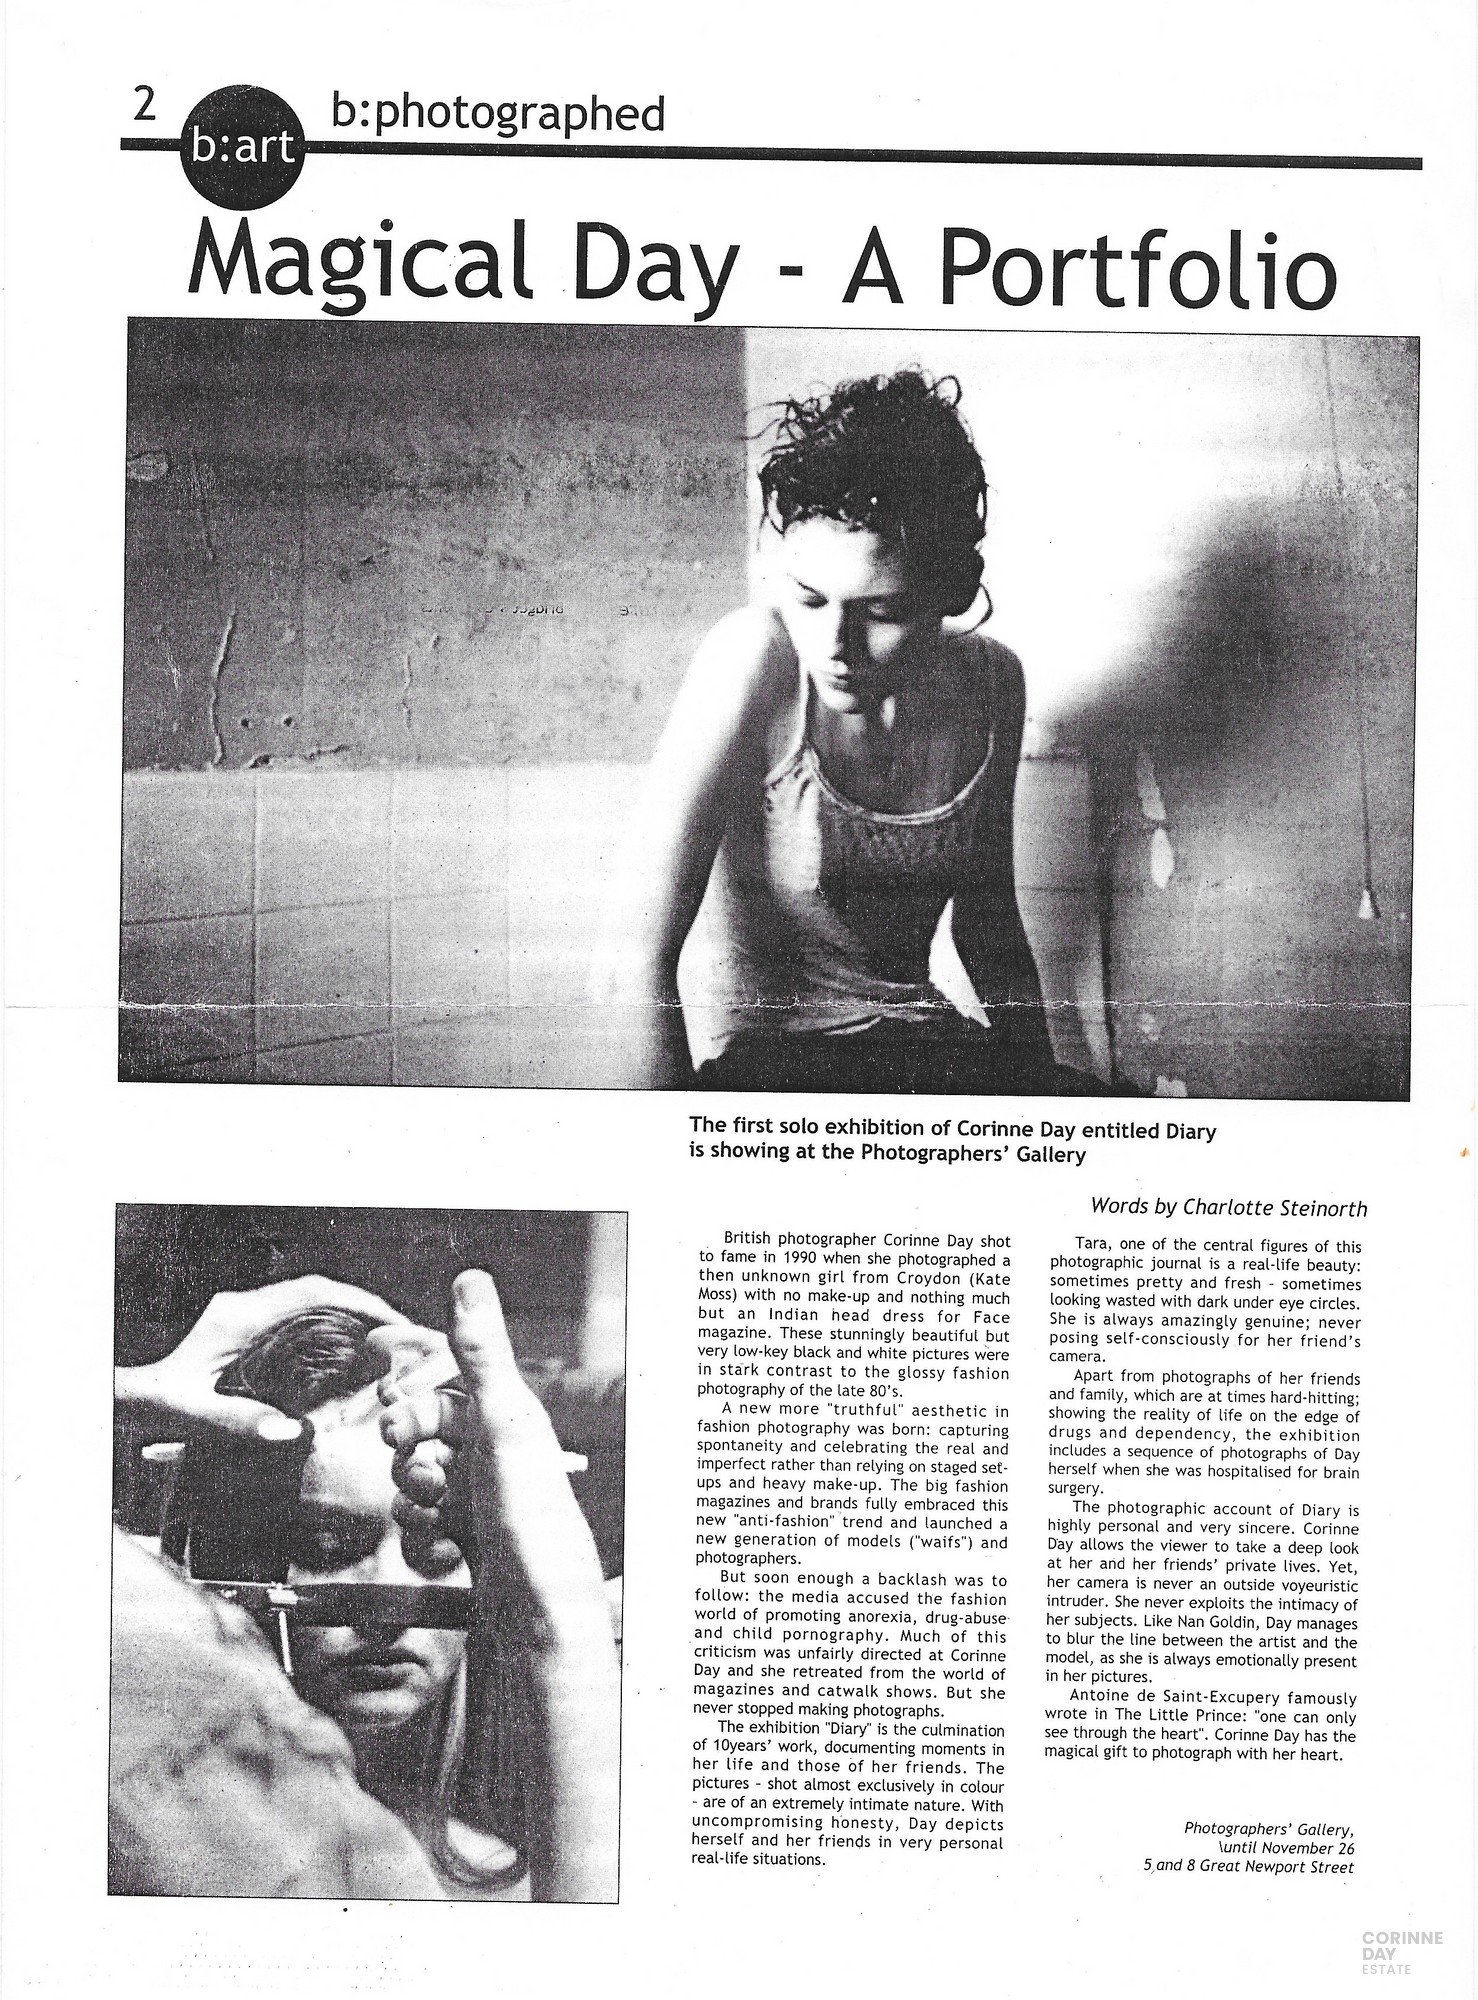 Magical Day - A Portfolio, 2000 — Image 1 of 1